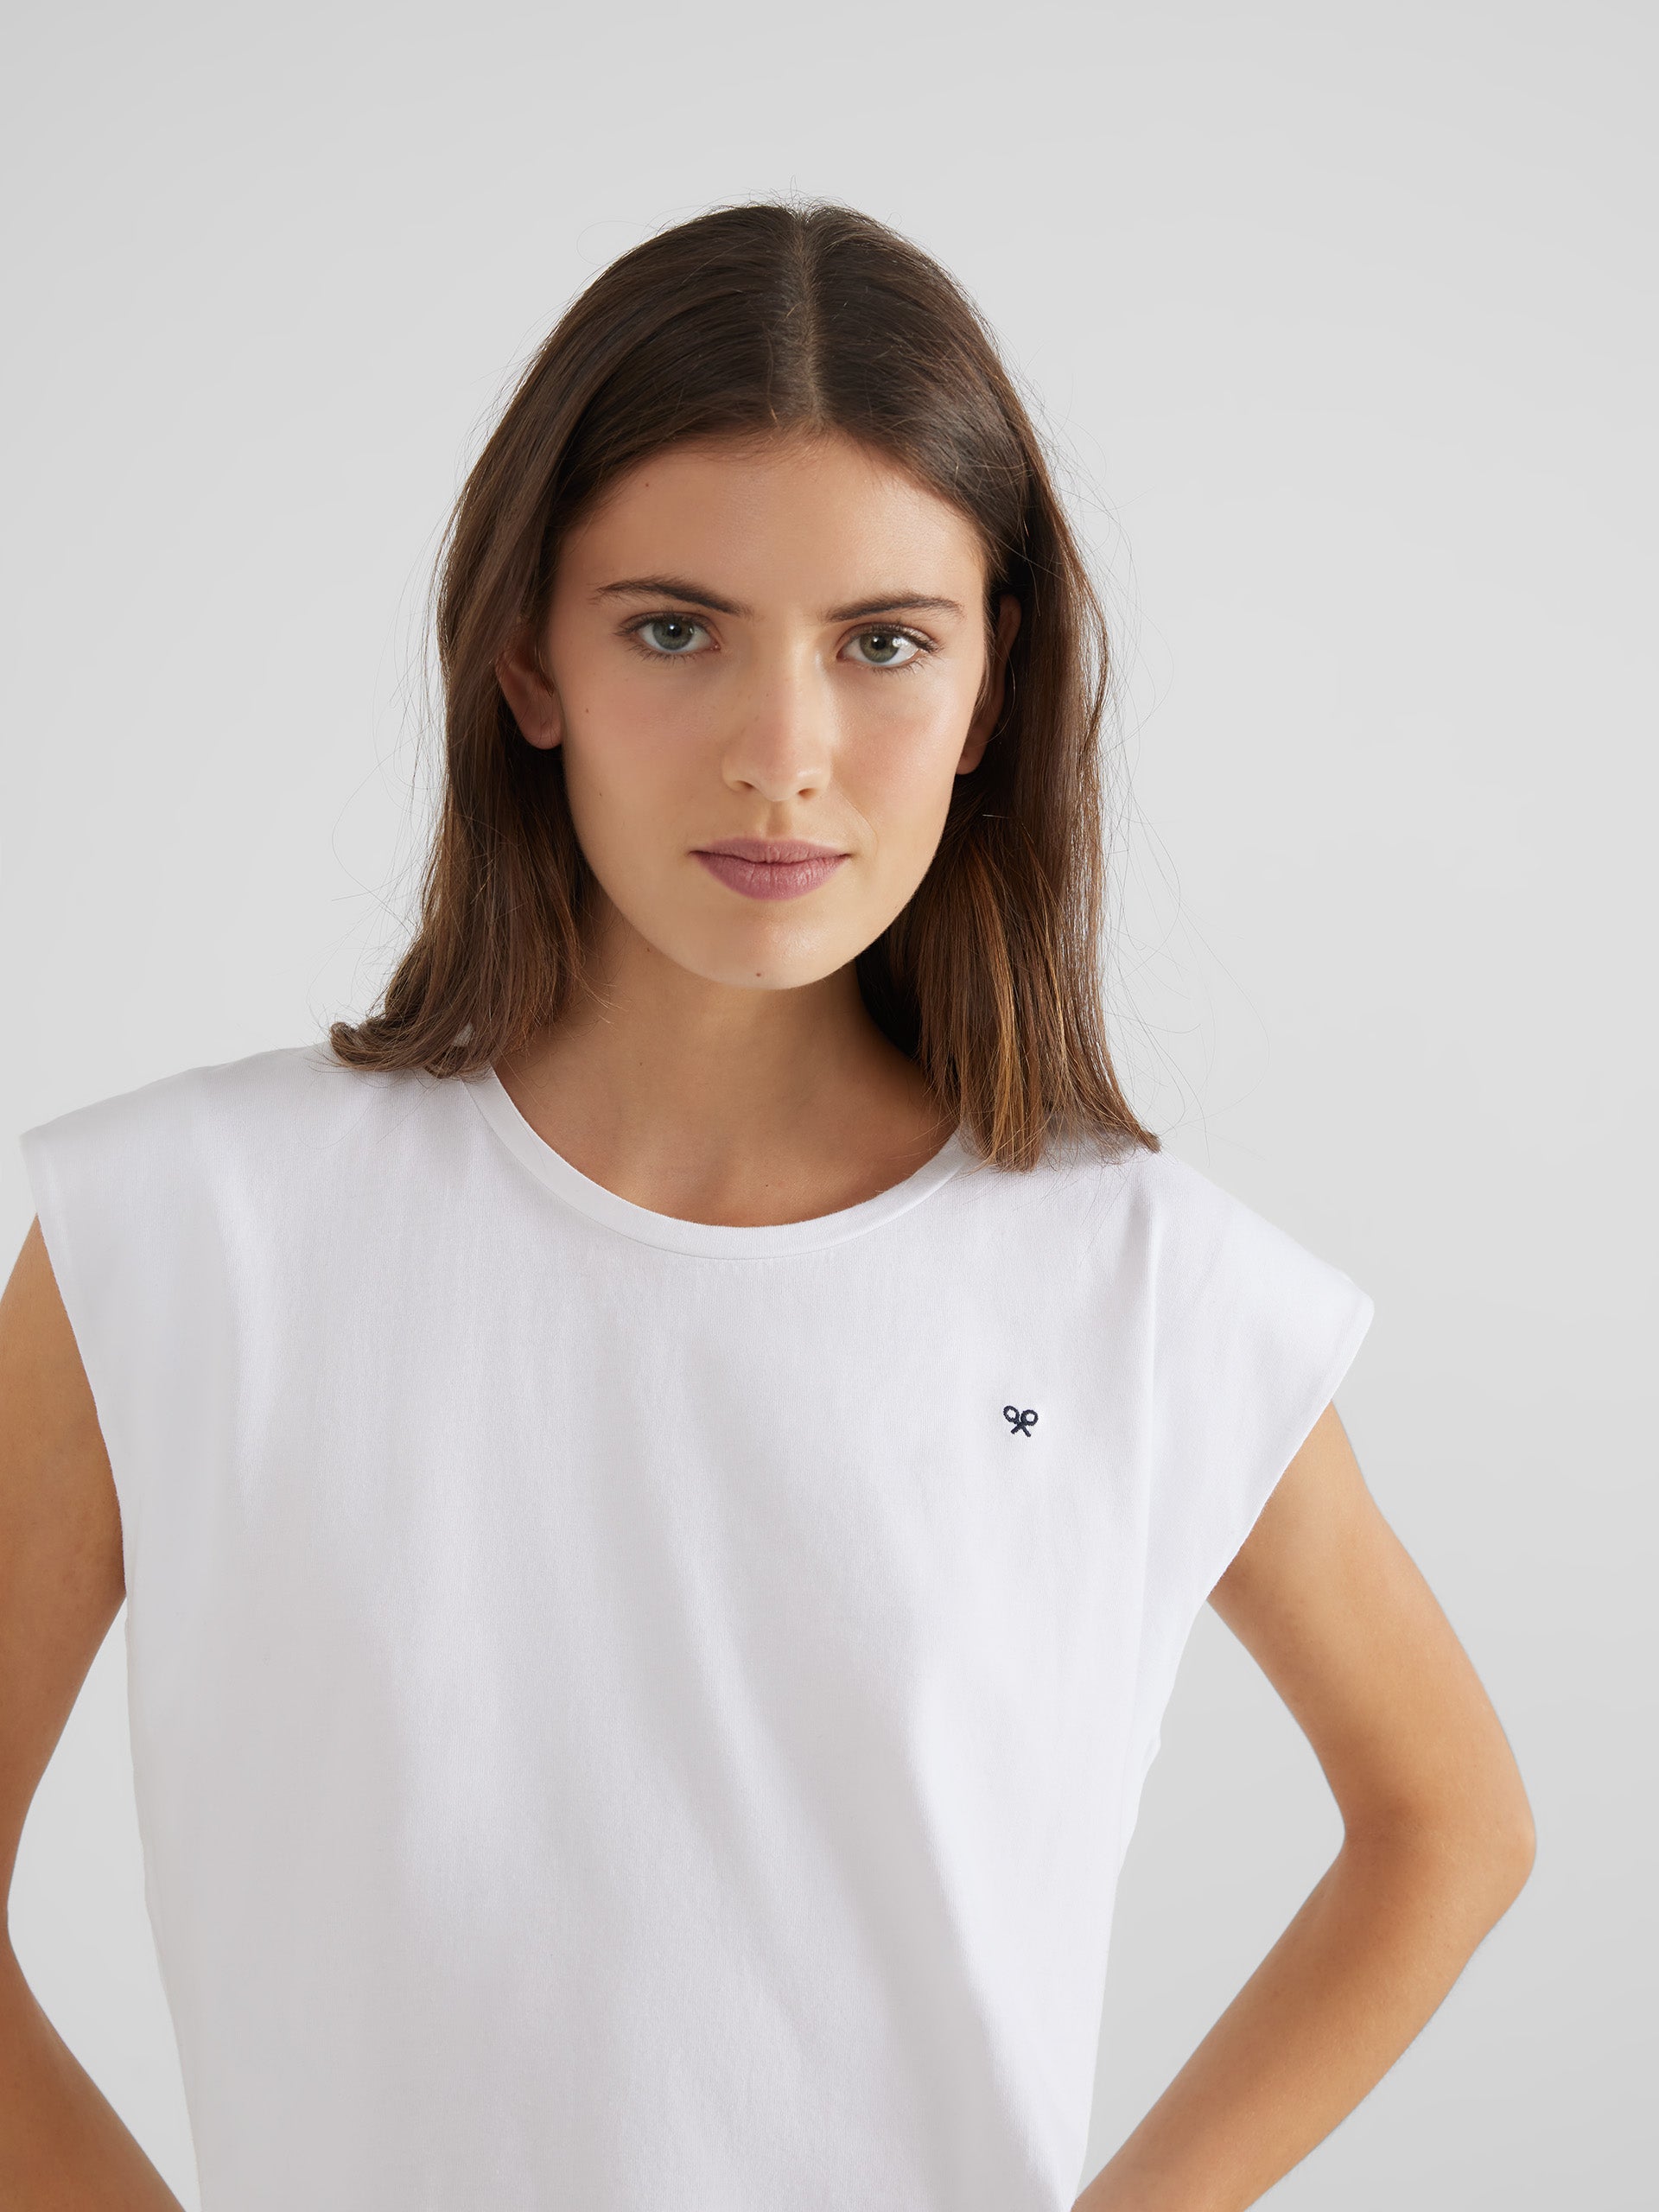 T-shirt Solar Manches Longues Femme pour sublimation - blanc Blanc, TEXTILES ET GALANTERIES \ T-SHIRTS